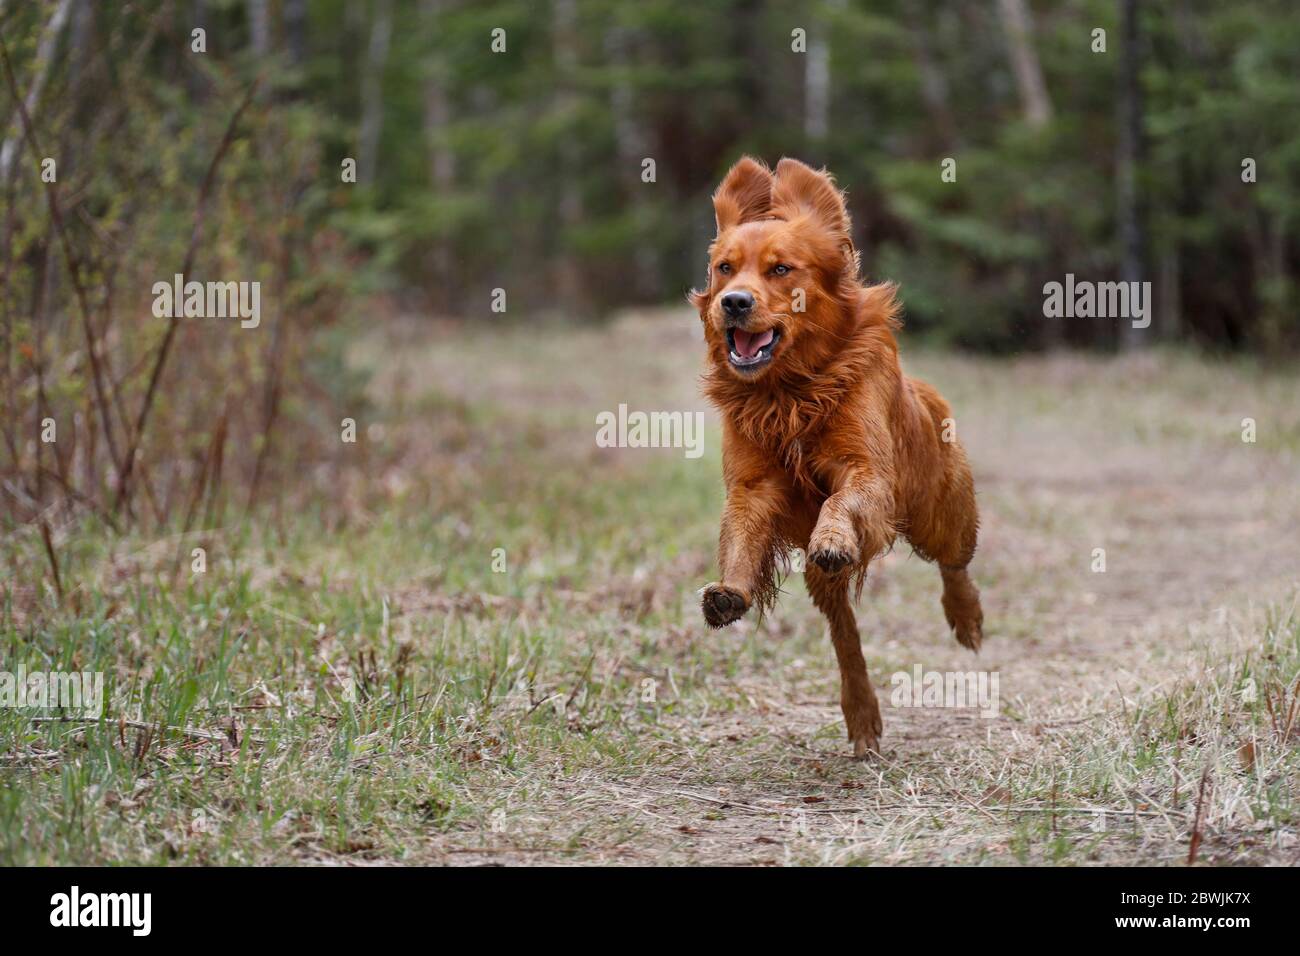 Golden retriever dog in the air as he runs. Stock Photo